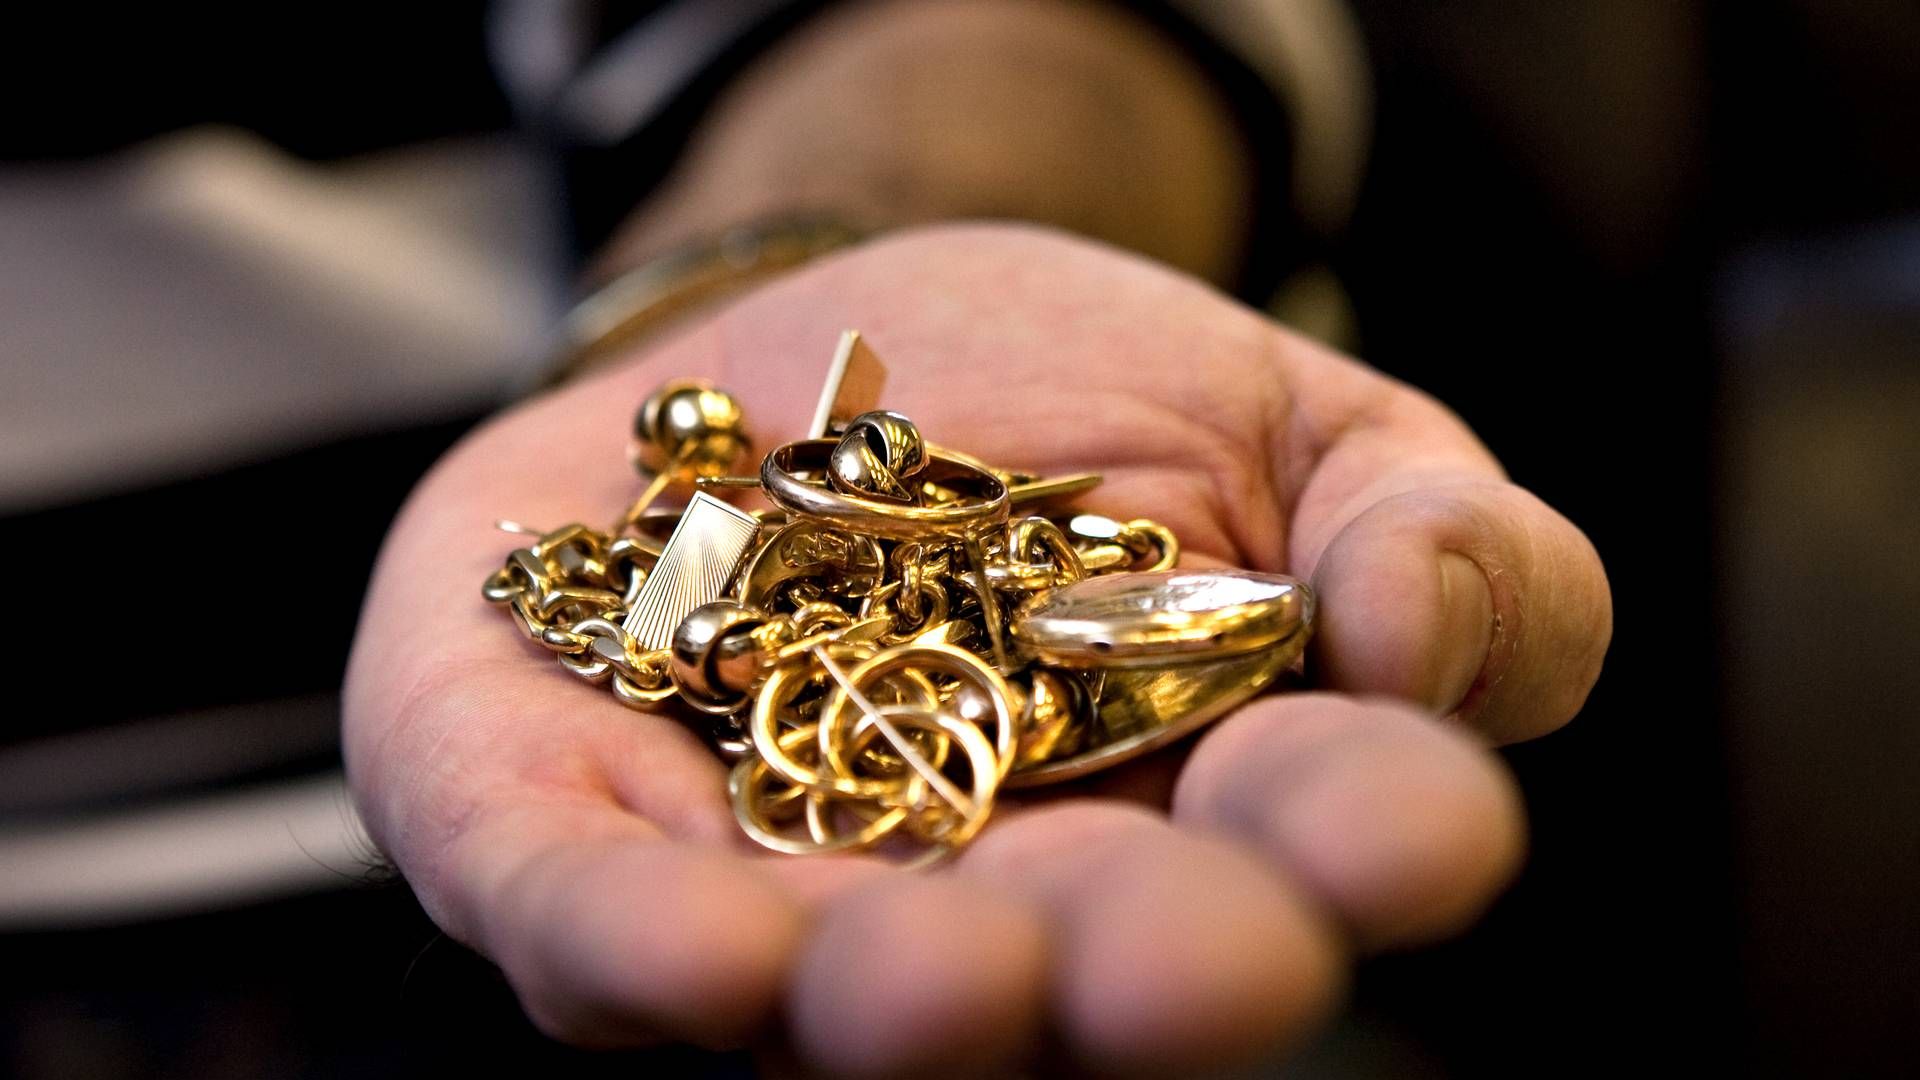 Verdens centralbanker har opkøbt mere end 1000 tons guld alene i 2022 og 2023, skriver TV2. | Foto: Uffe Frandsen